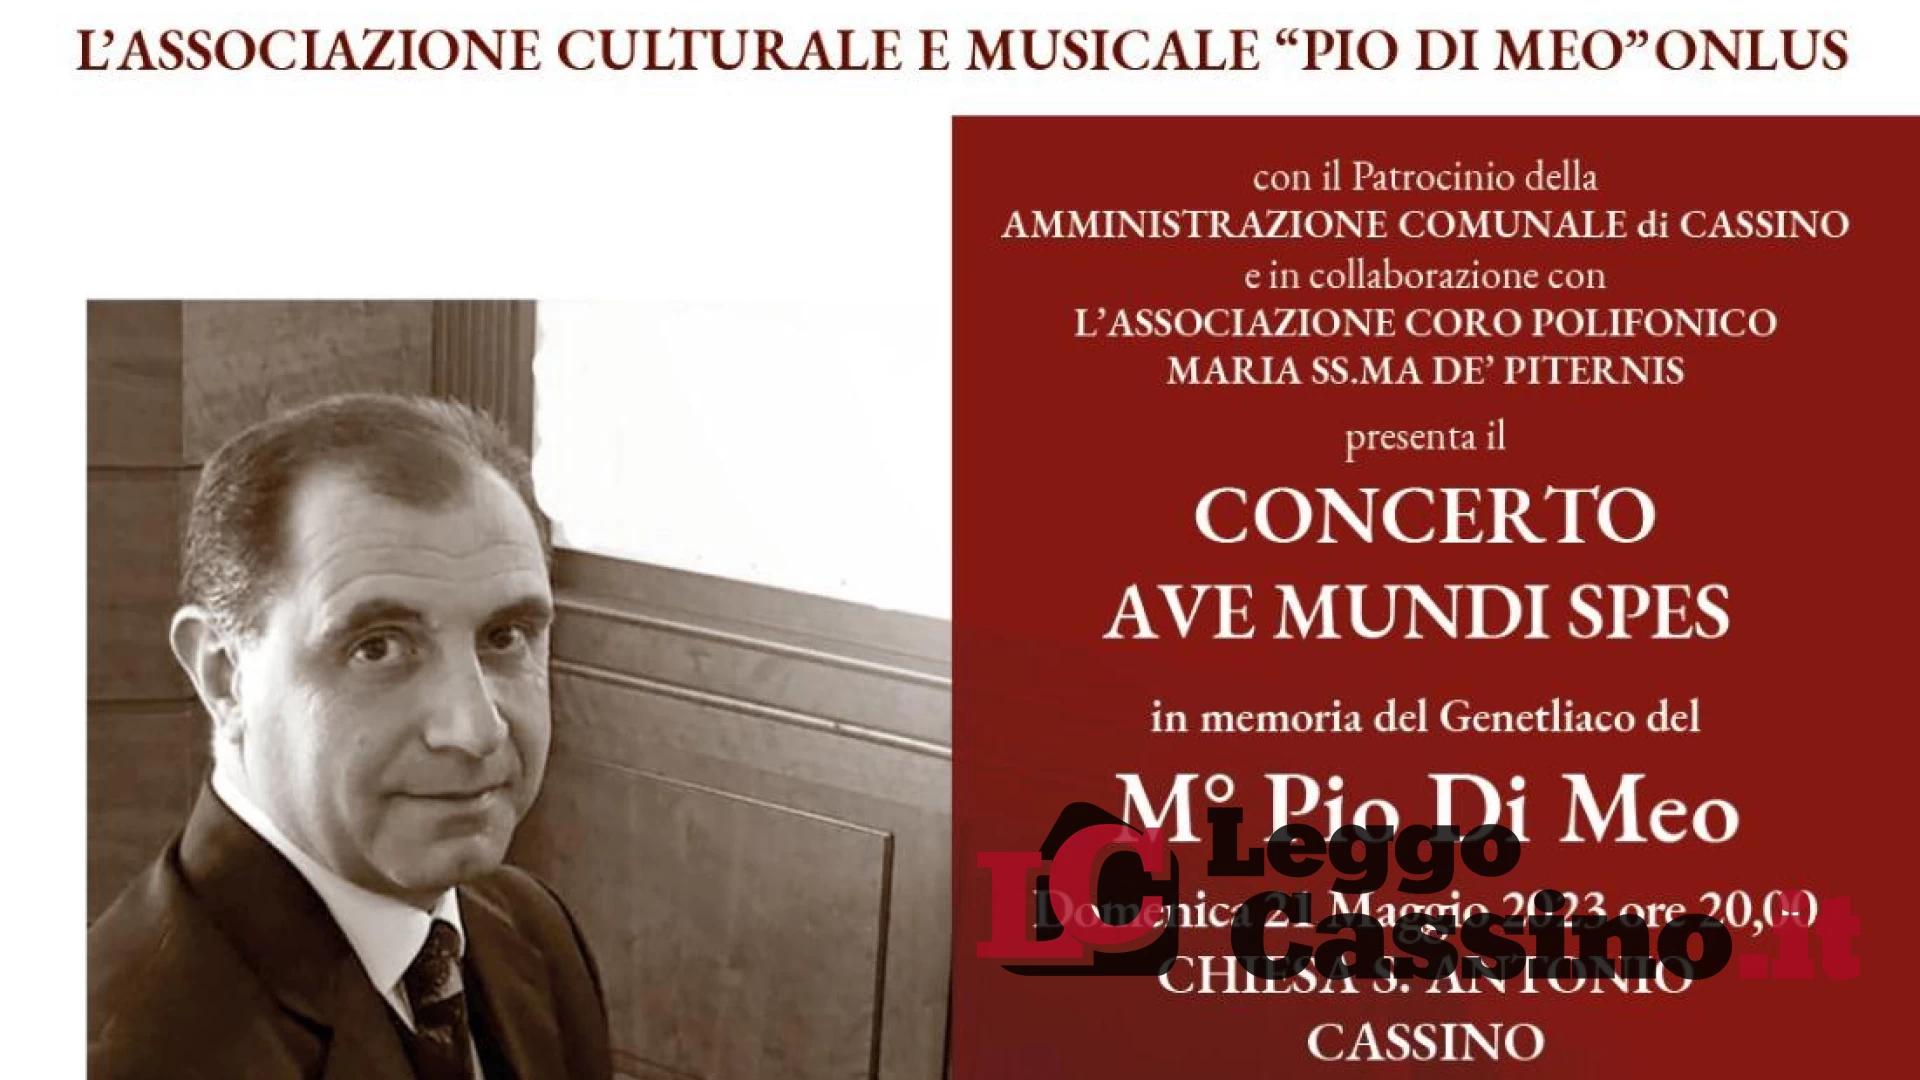 Il concerto "Ave Mundi Spes" in memoria del Genetliaco del M° Pio Di Meo